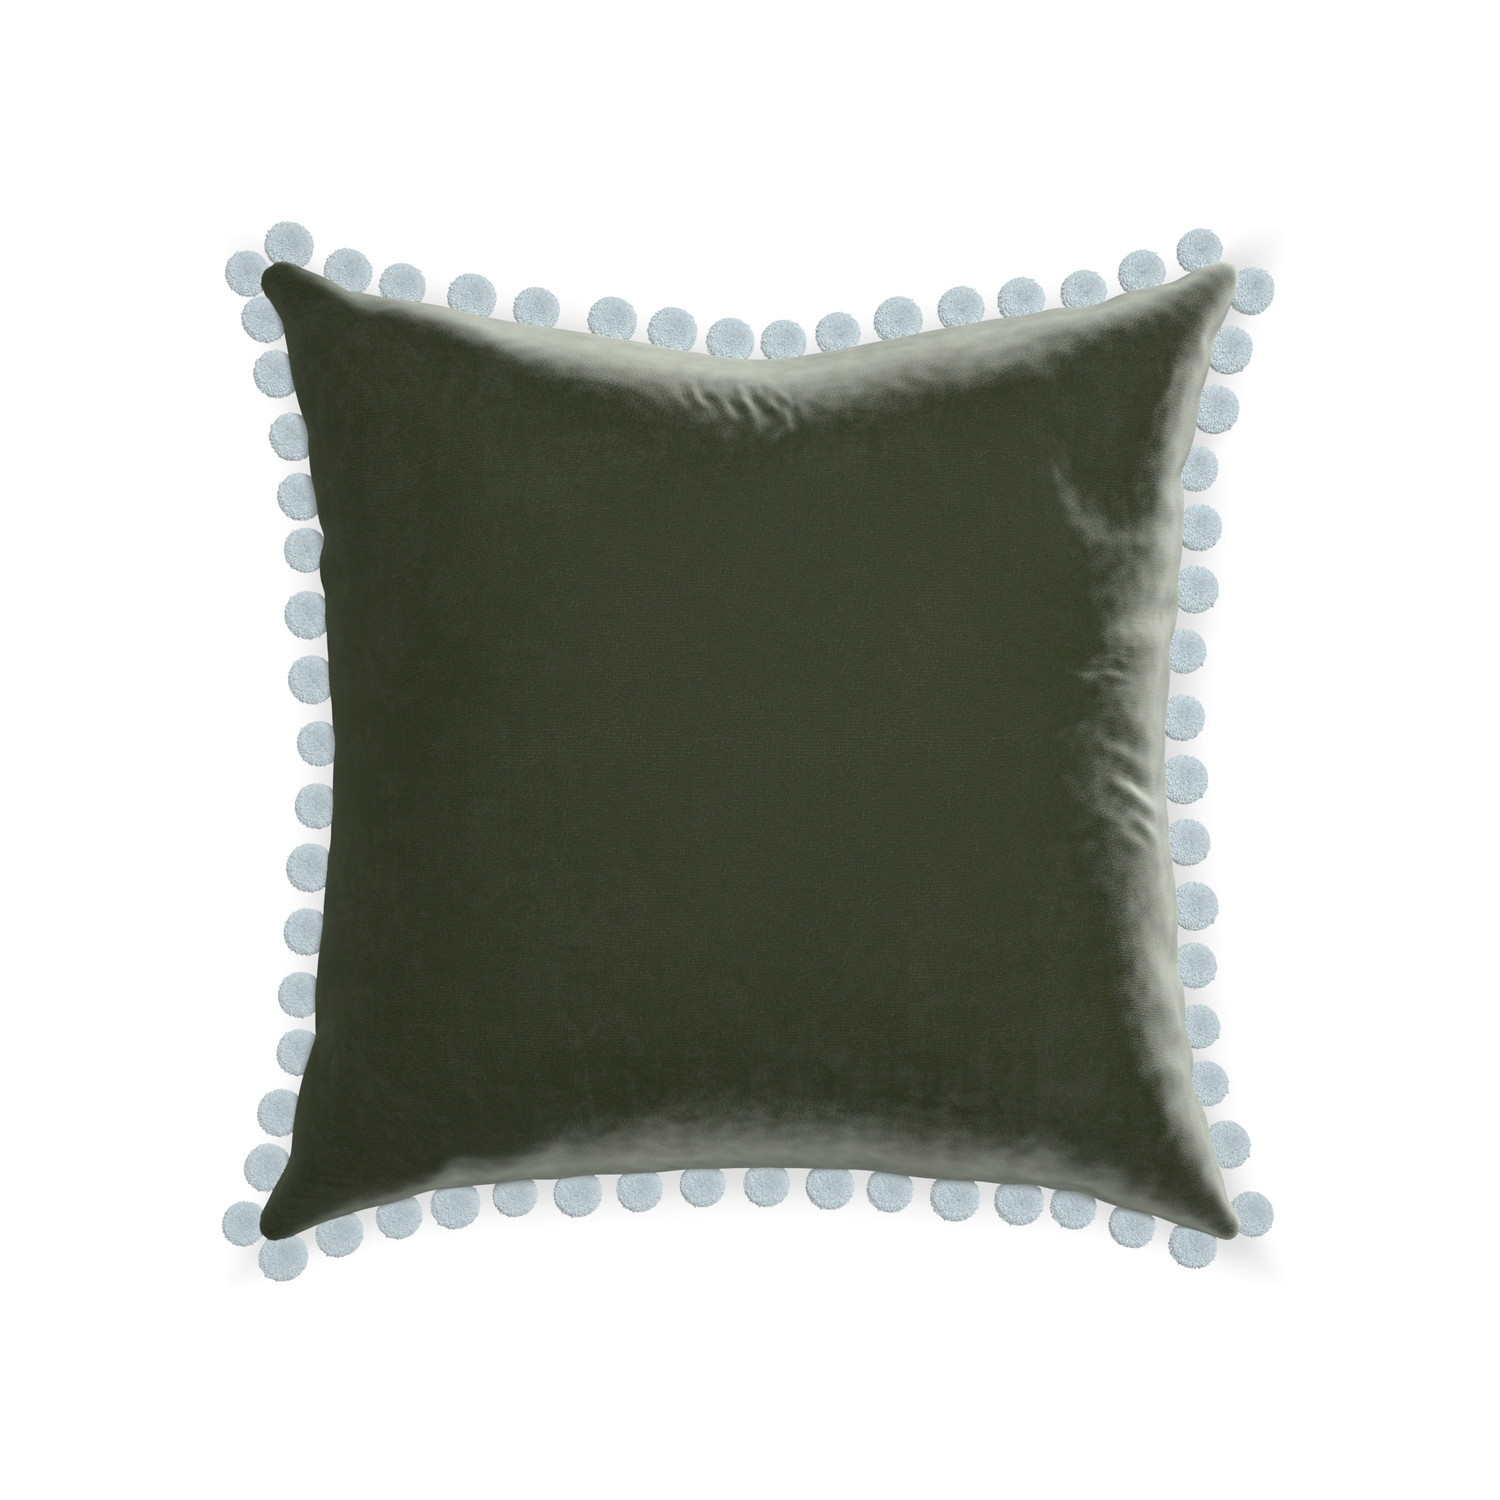 square fern green velvet pillow with light blue pom poms